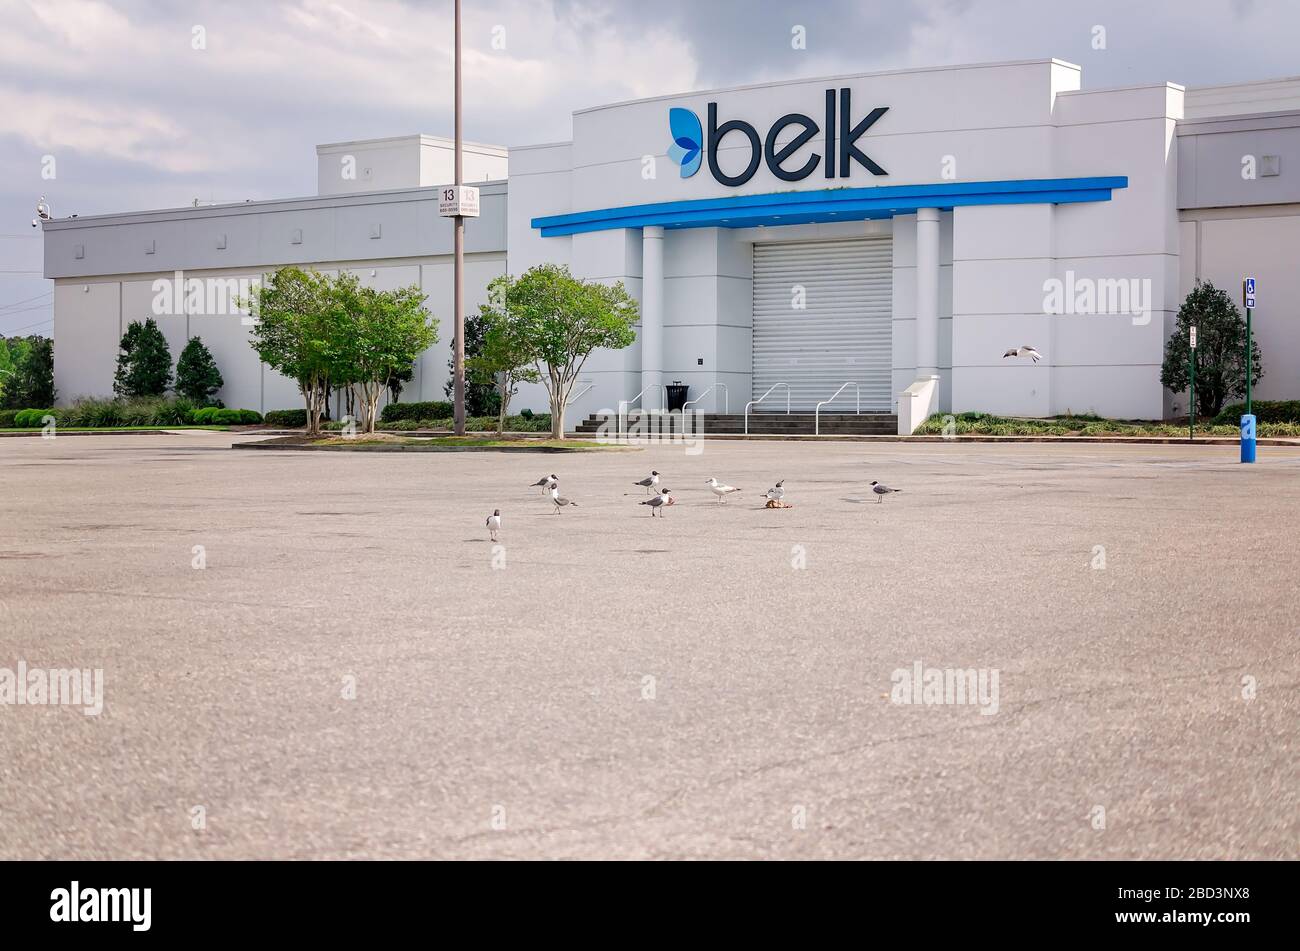 Le parking du grand magasin Belk de la galerie marchande Bel Air est abandonné lors de la pandémie COVID-19, le 29 mars 2020 à Mobile, Alabama. Banque D'Images